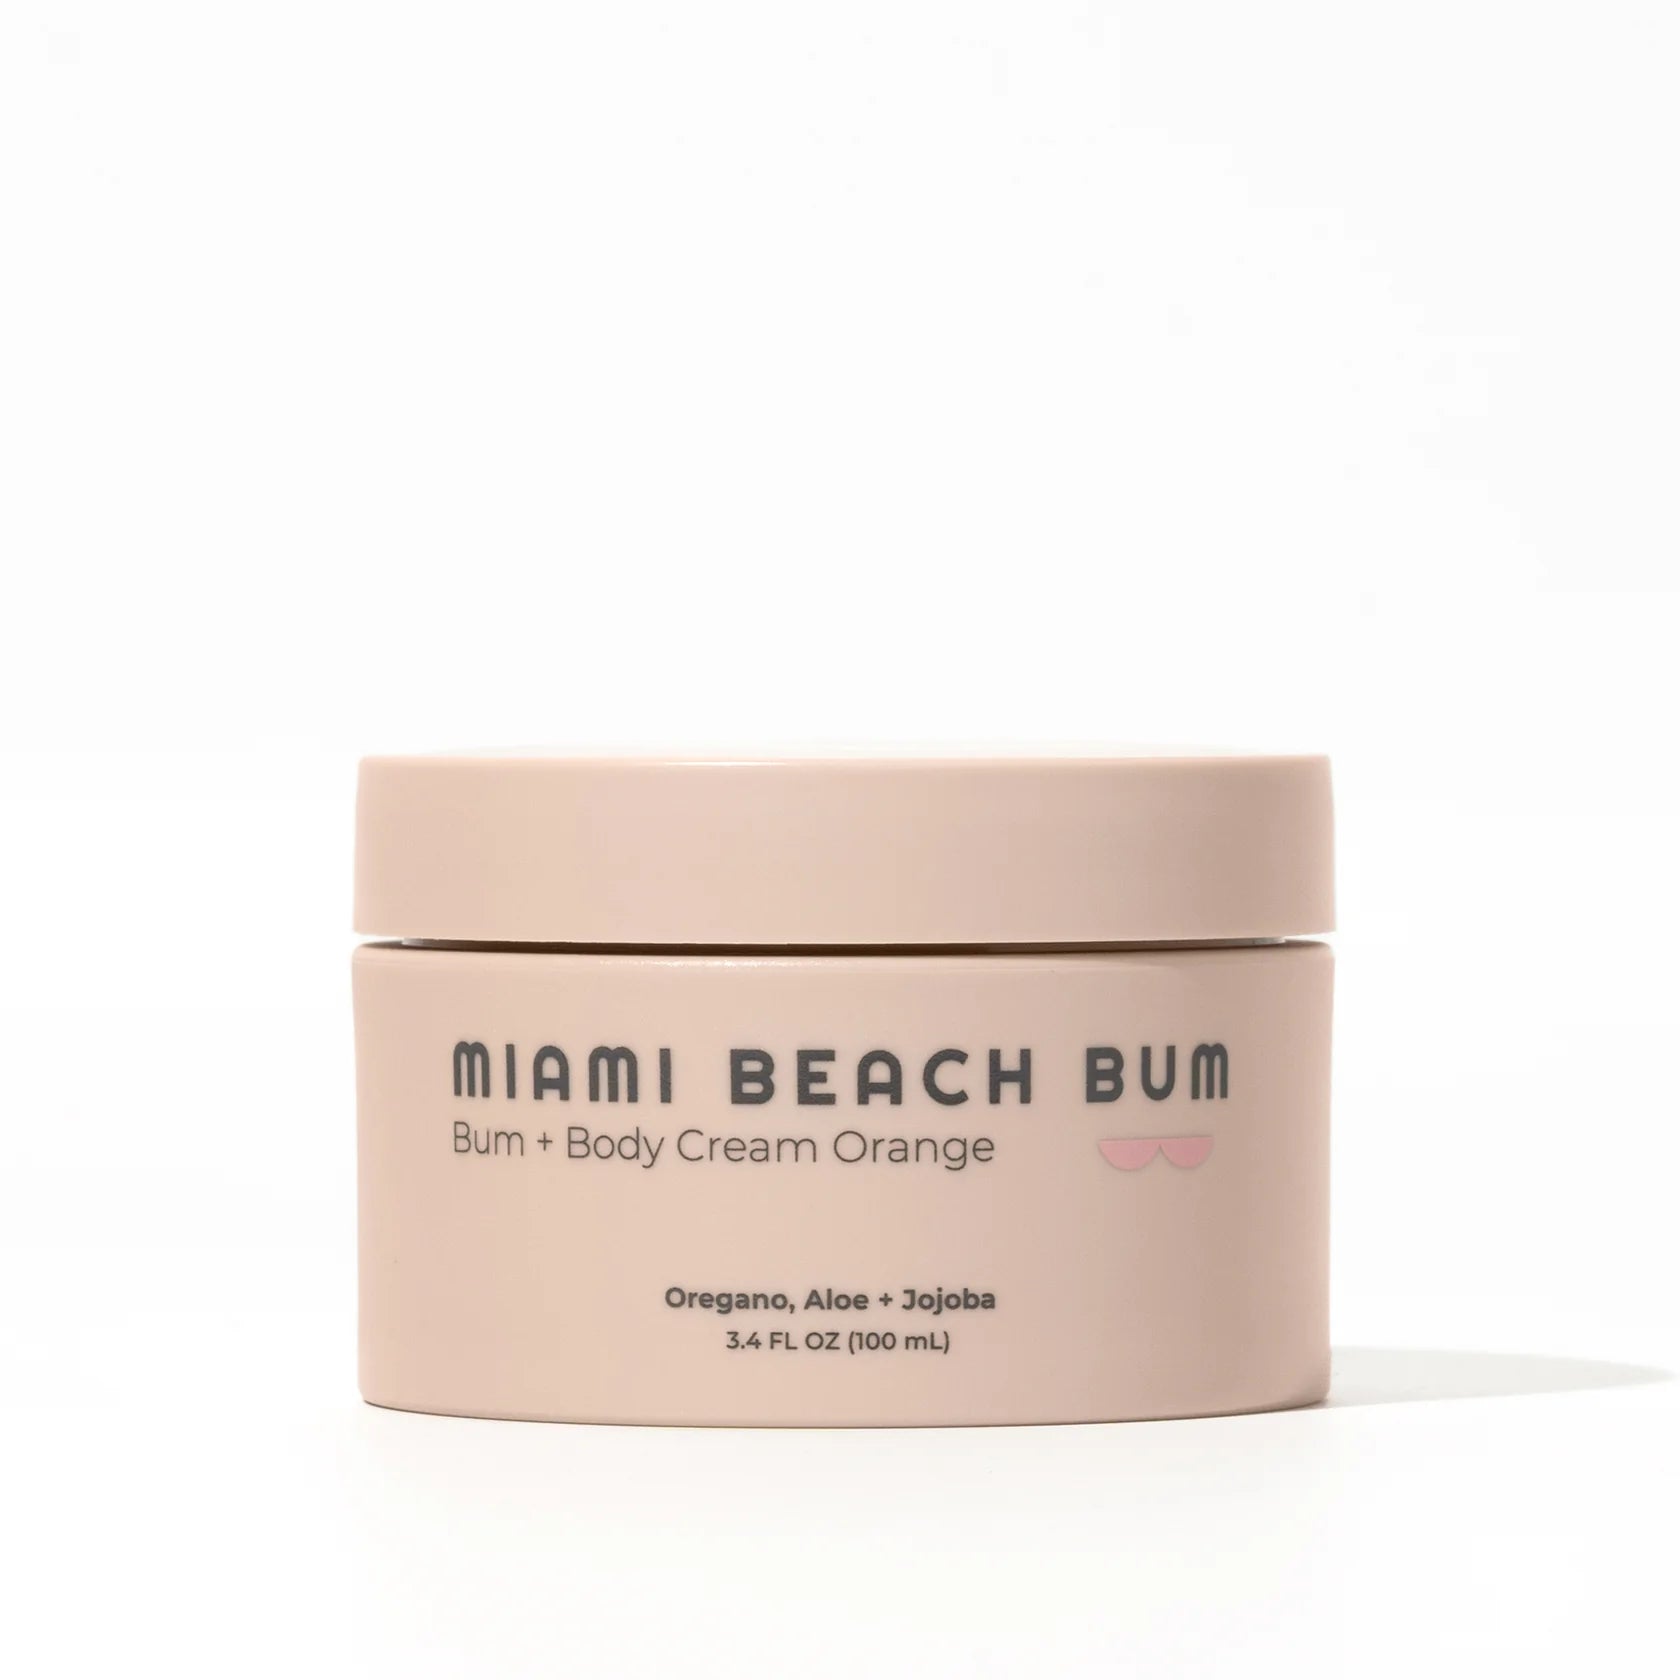 Miami Beach Bum Bum + Body Cream Orange